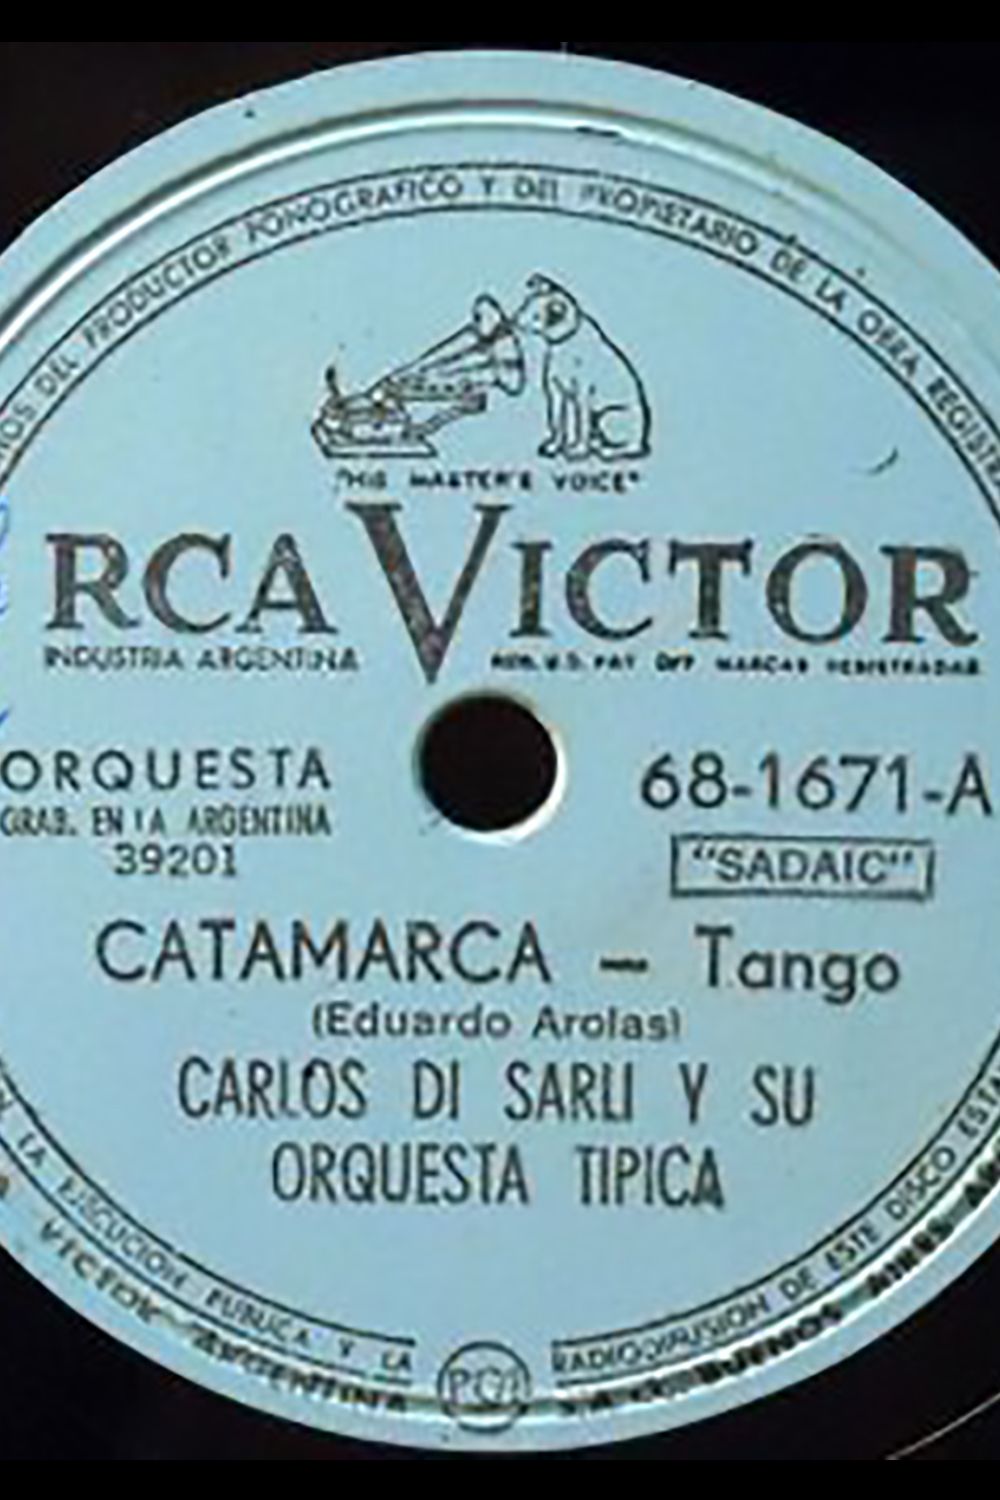 "Catamarca", vinyl disc Argentine Tango music.